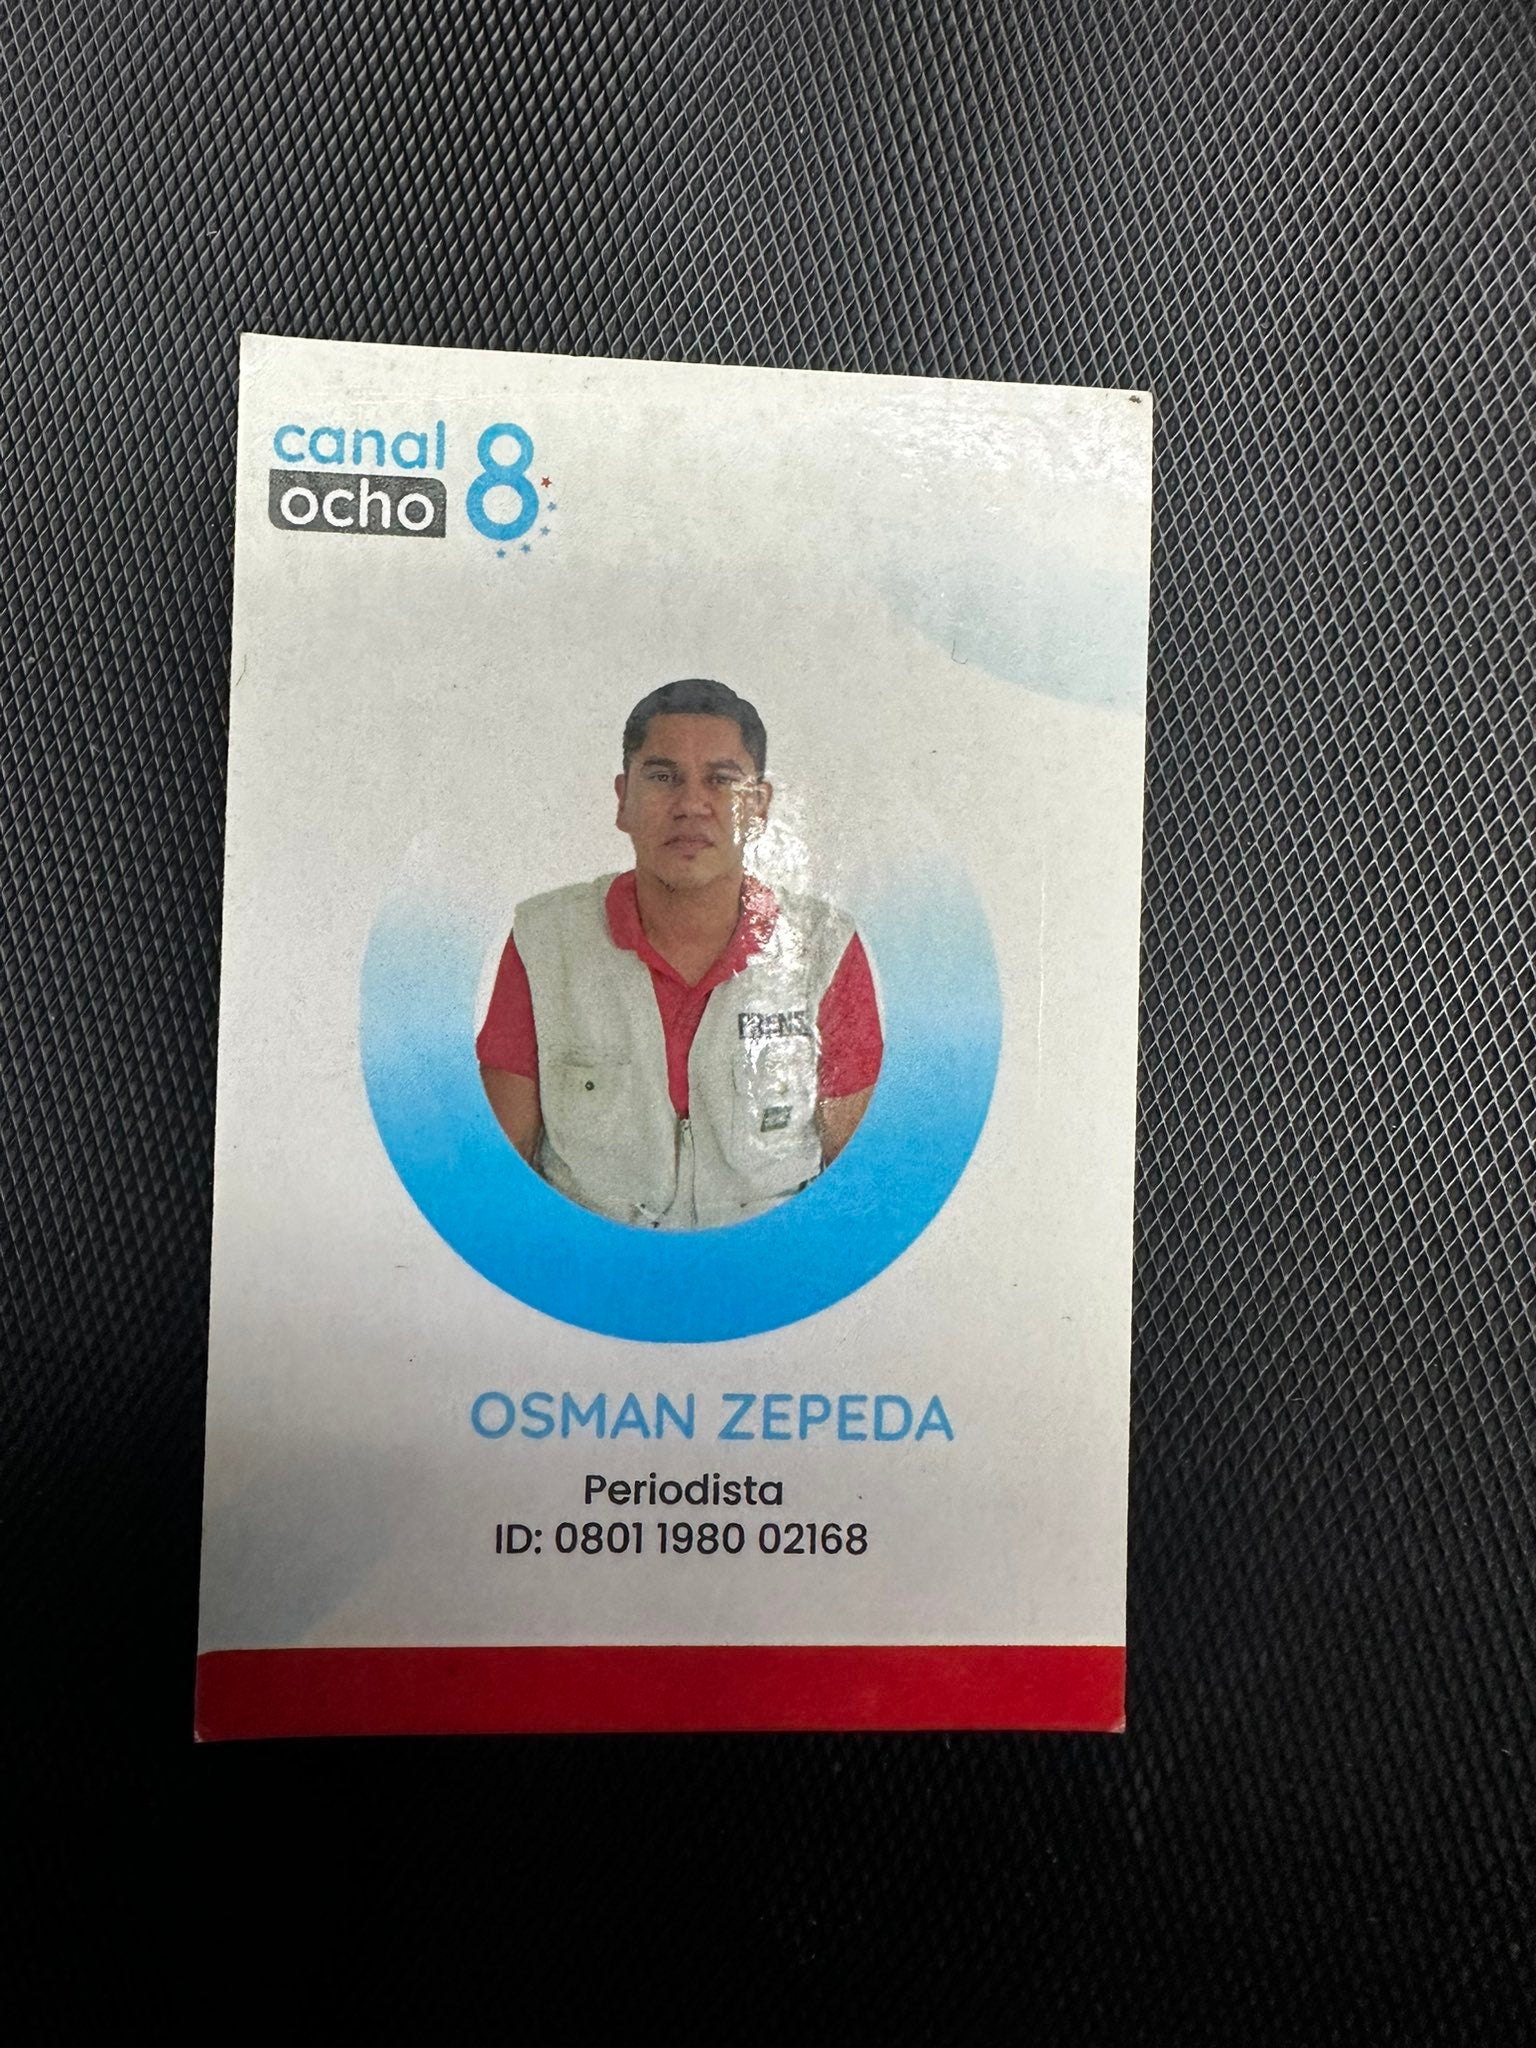 Osman Zepeda